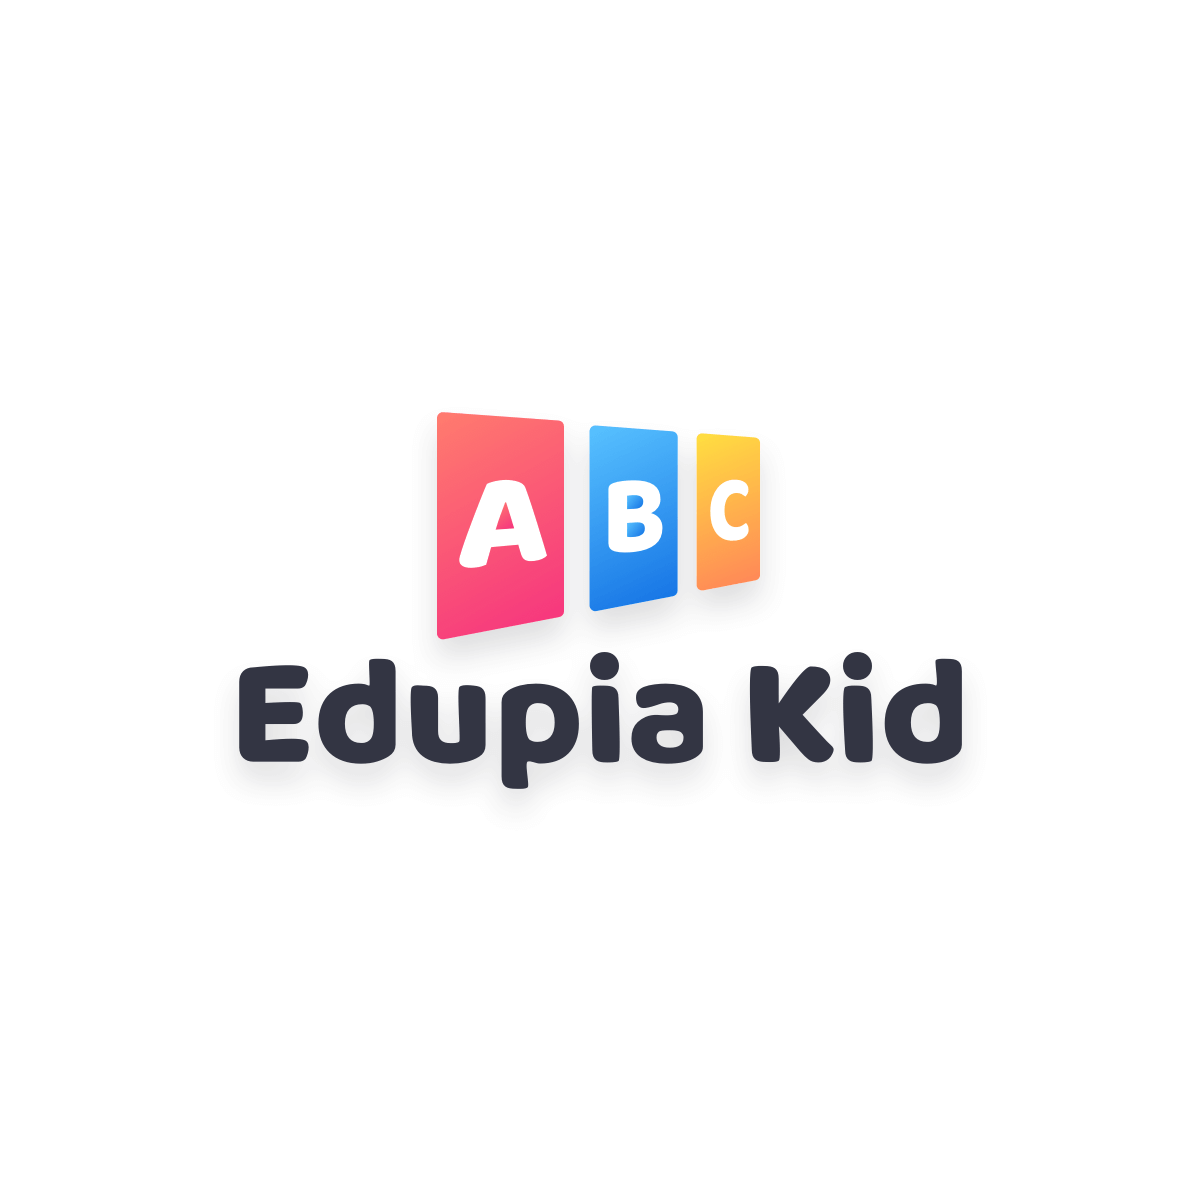 Hướng dẫn sử dụng sản phẩm - Edupia Kid - Học Tiếng Anh ...